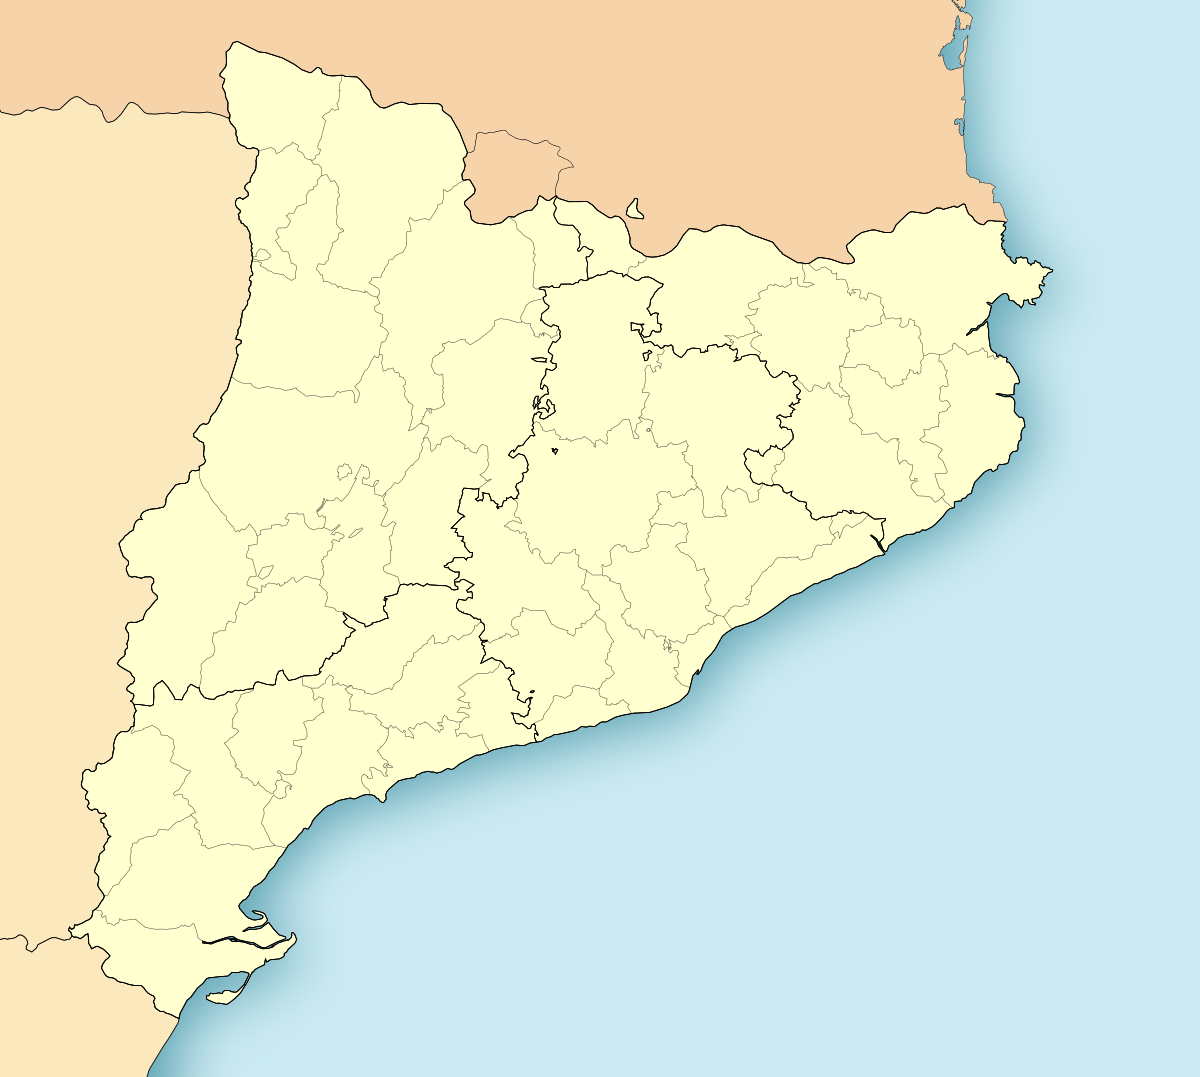 (Voir situation sur carte : Catalogne)